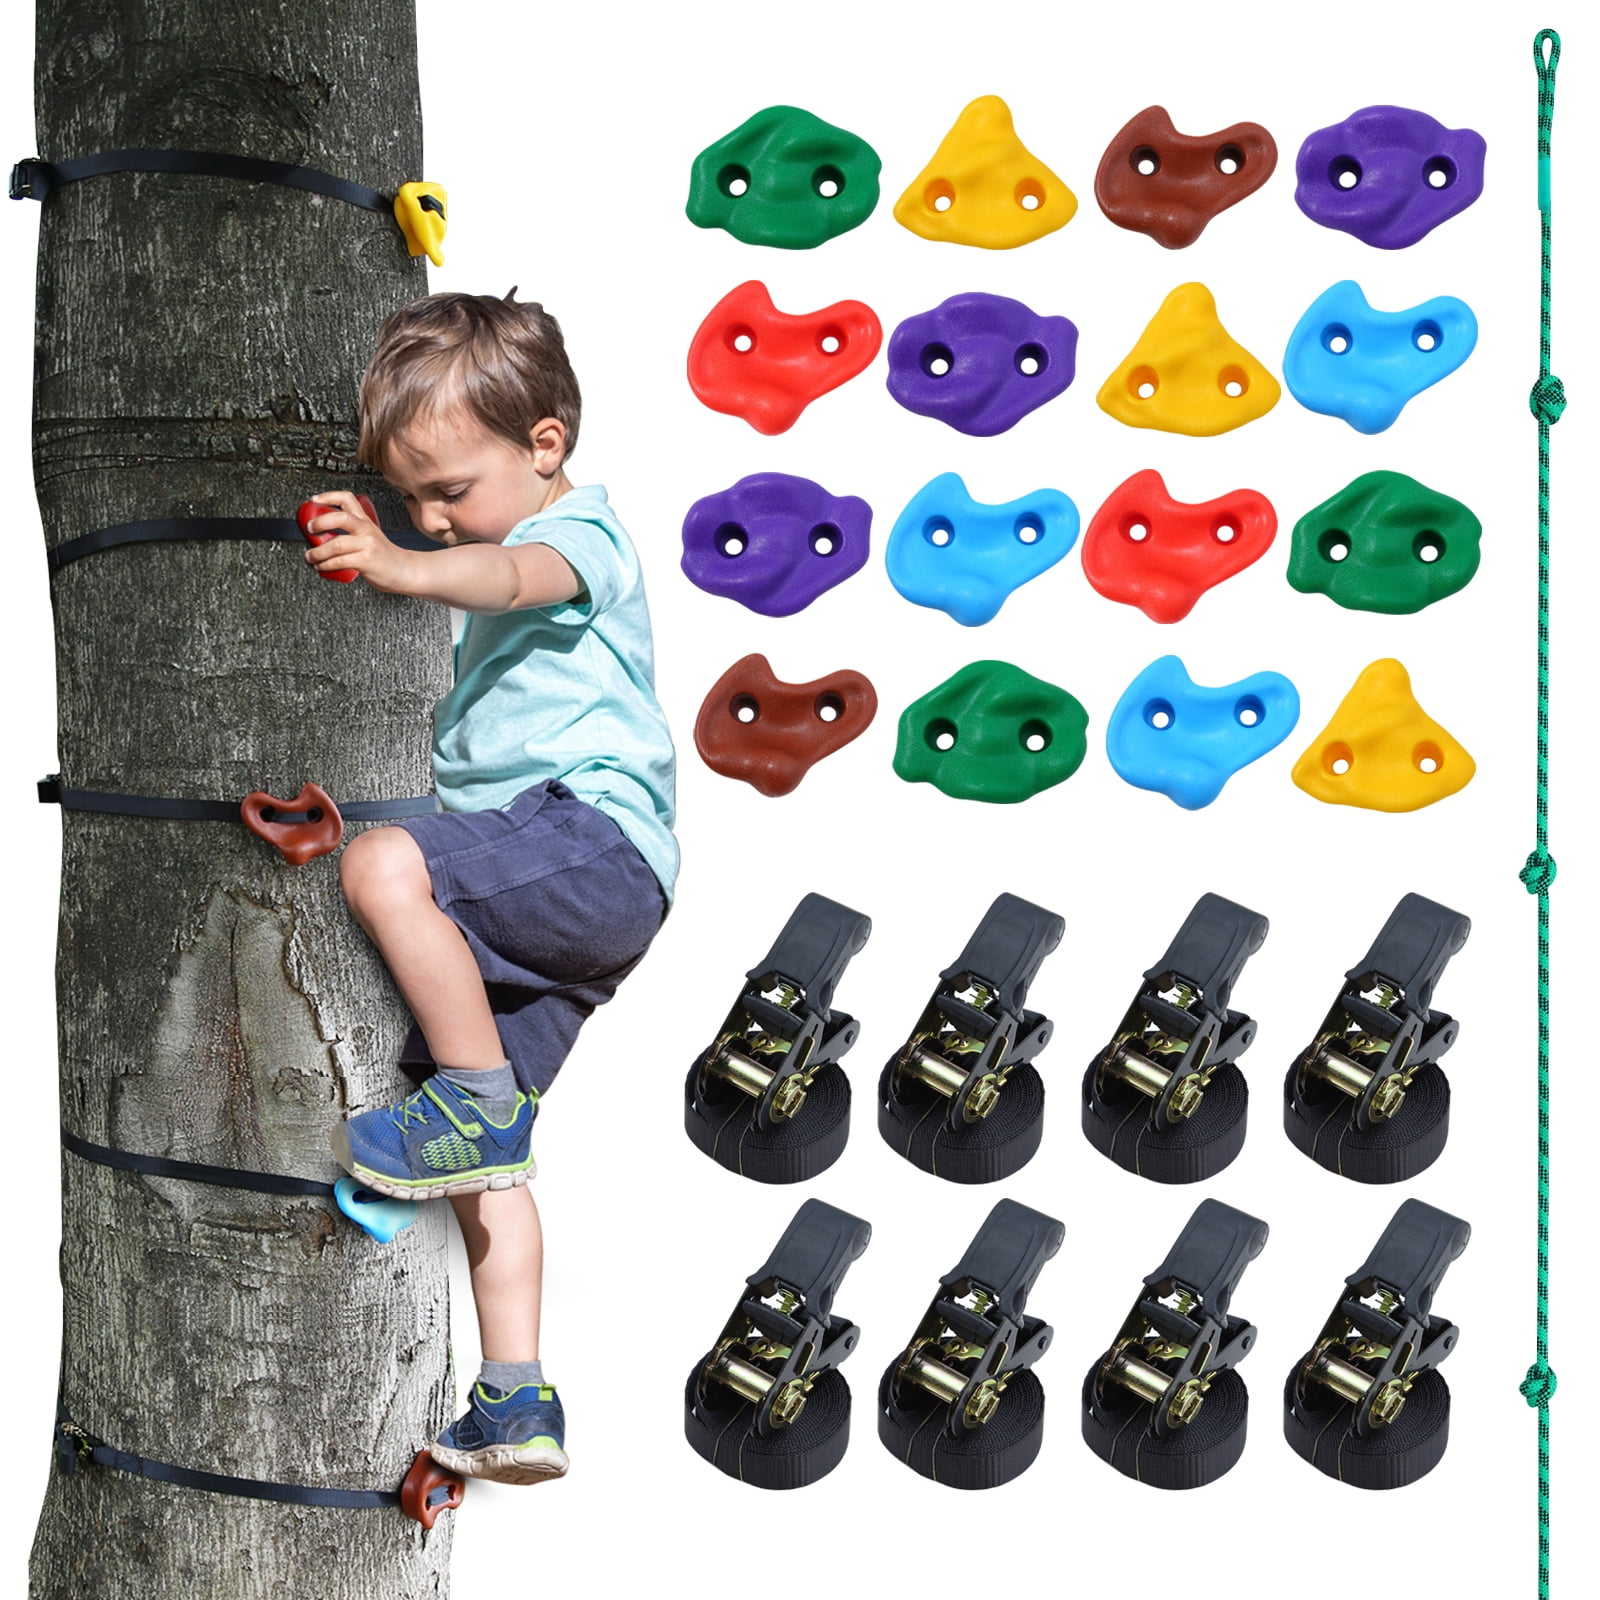 große Klettergriffe für das Outdoor-Ninja Warrior-Hindernisparcours-Training im Freien Furuix 15 Ninja Tree Climbing Holds und 6 robuste Ratschengurte für Kinder Tree Climbing